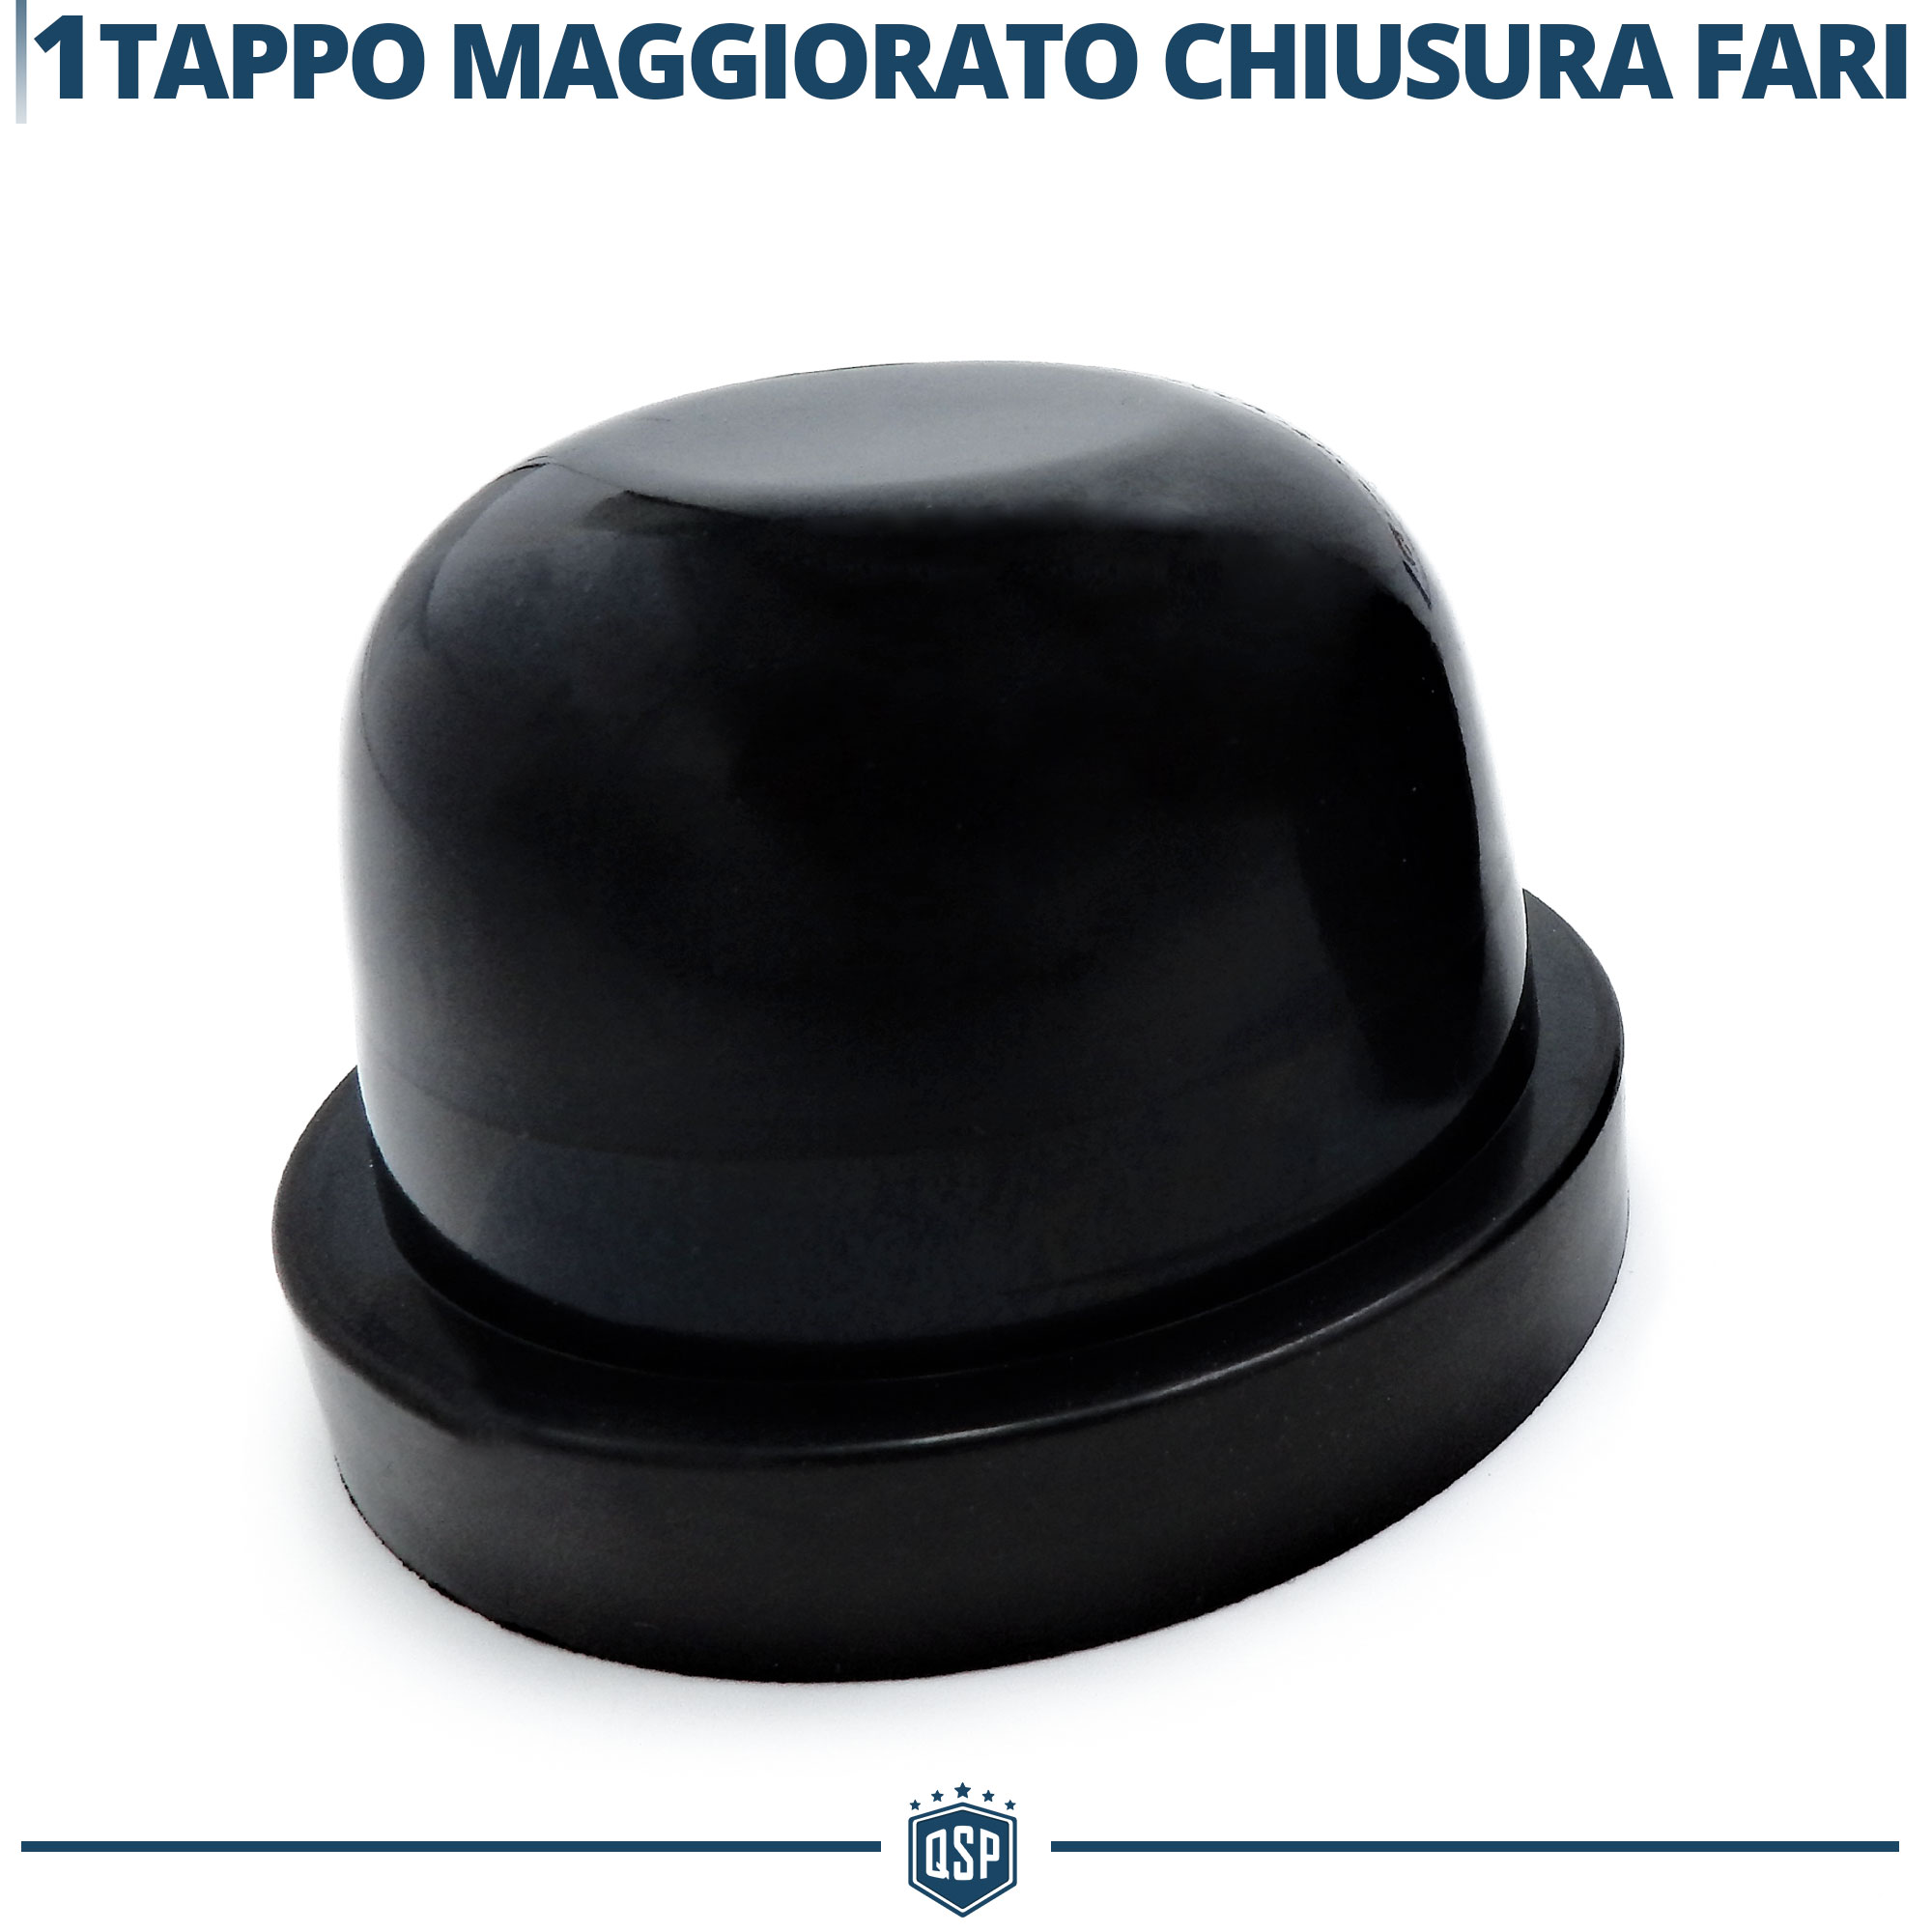 Tappo copri-anabbagliante - ClubAlfa.it Forum